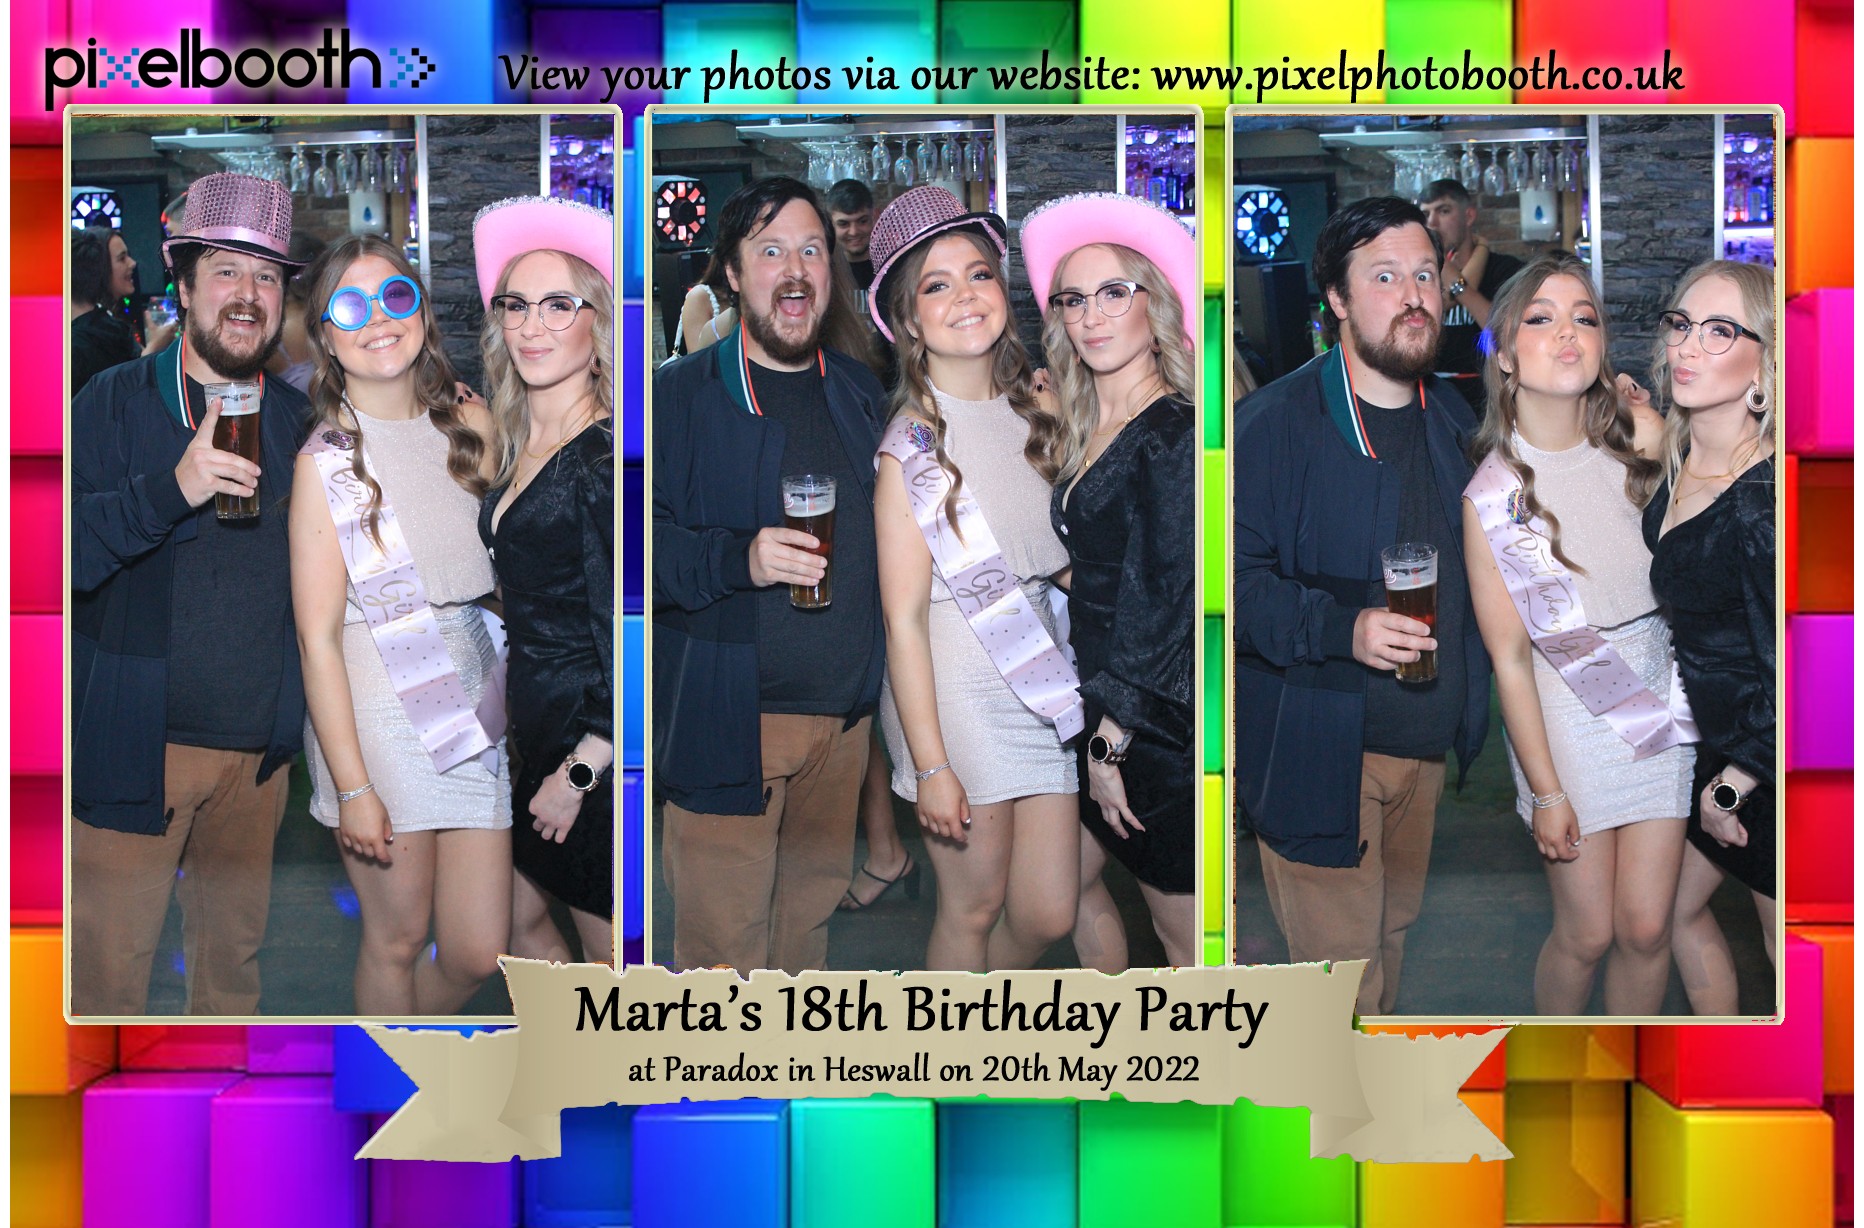 20th May 2022: Marta's 18th Birthday Party at Paradox